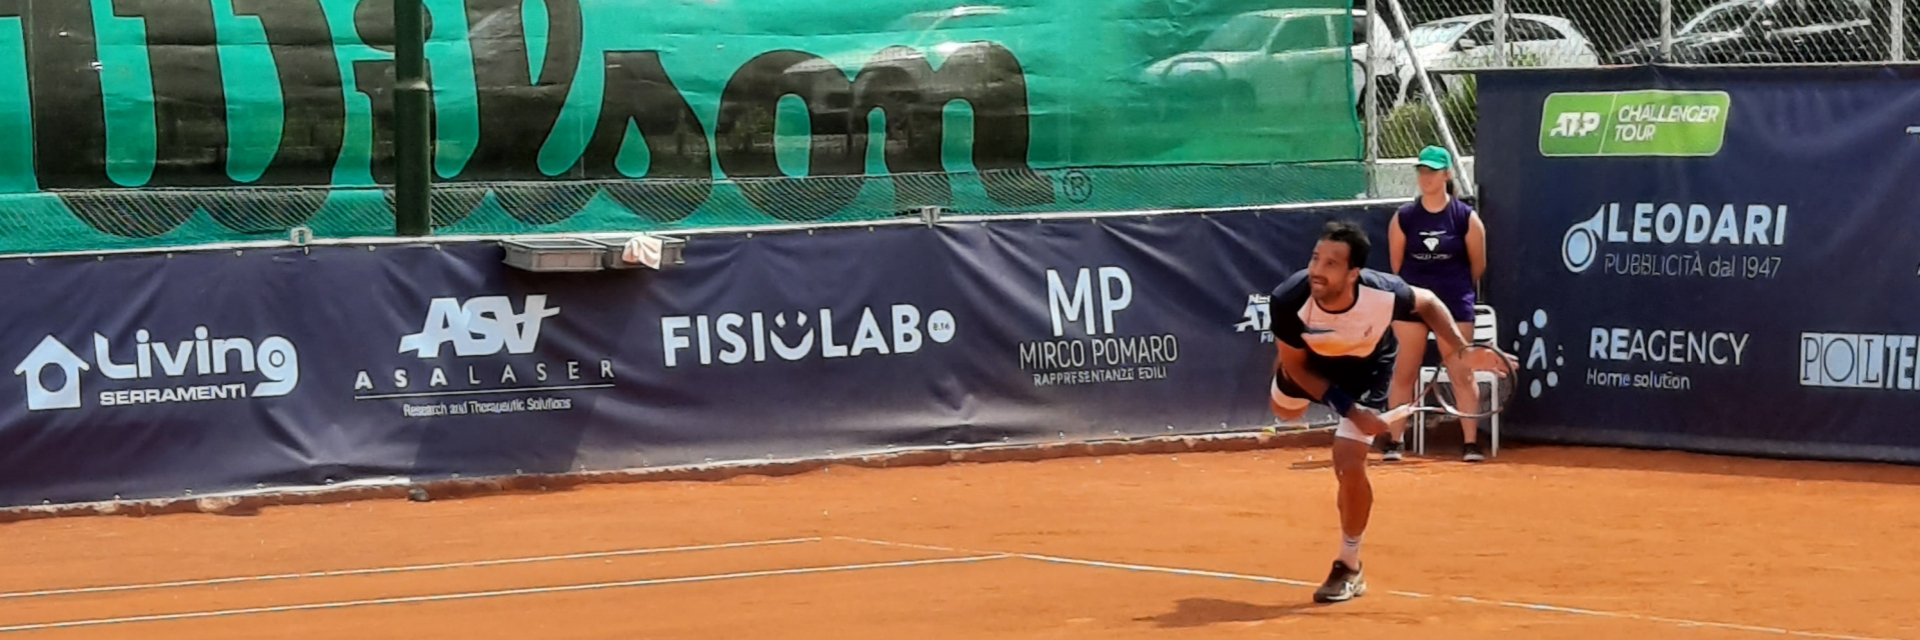 ASA in campo agli ATP Challenger di Vicenza de Asalaser